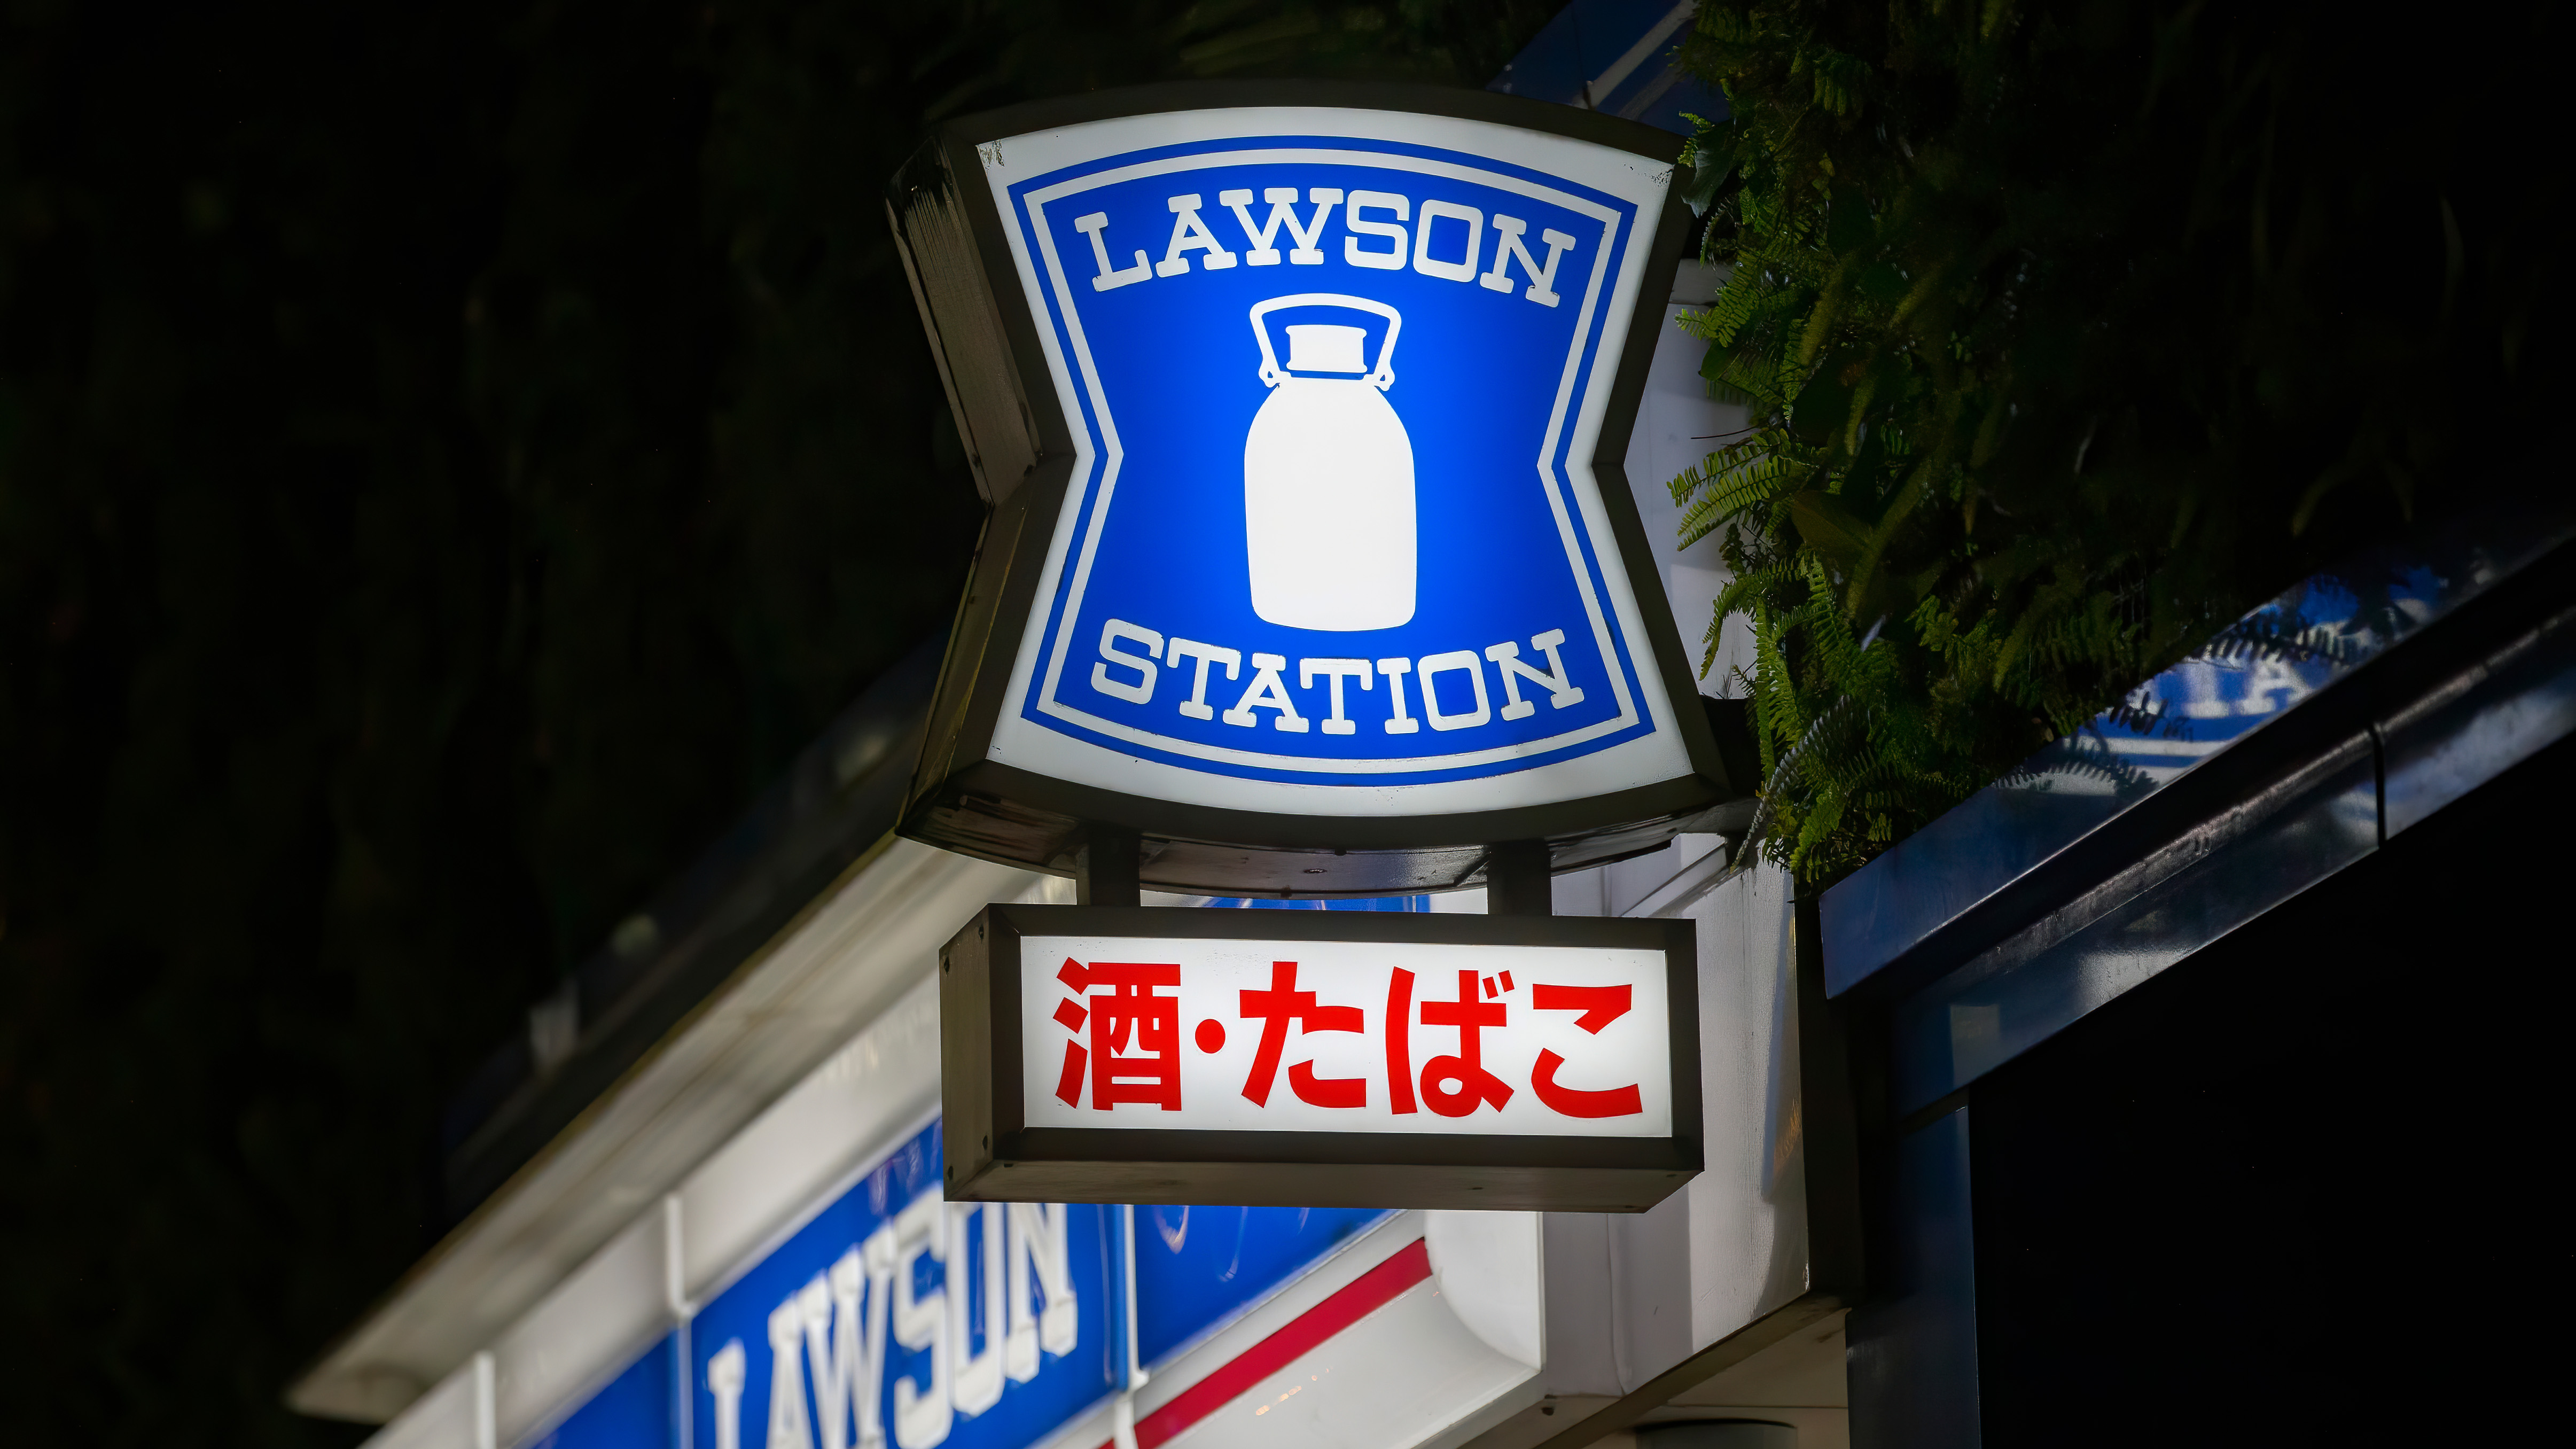 東京/日本 2020年3月2日 ローソンストア株式会社ローソンは、日本におけるコンビニエンスストアのフランチャイズチェーンである。オハイオ州カイヤホガフォールズ発祥の店だが、現在は日本法人として存在している。